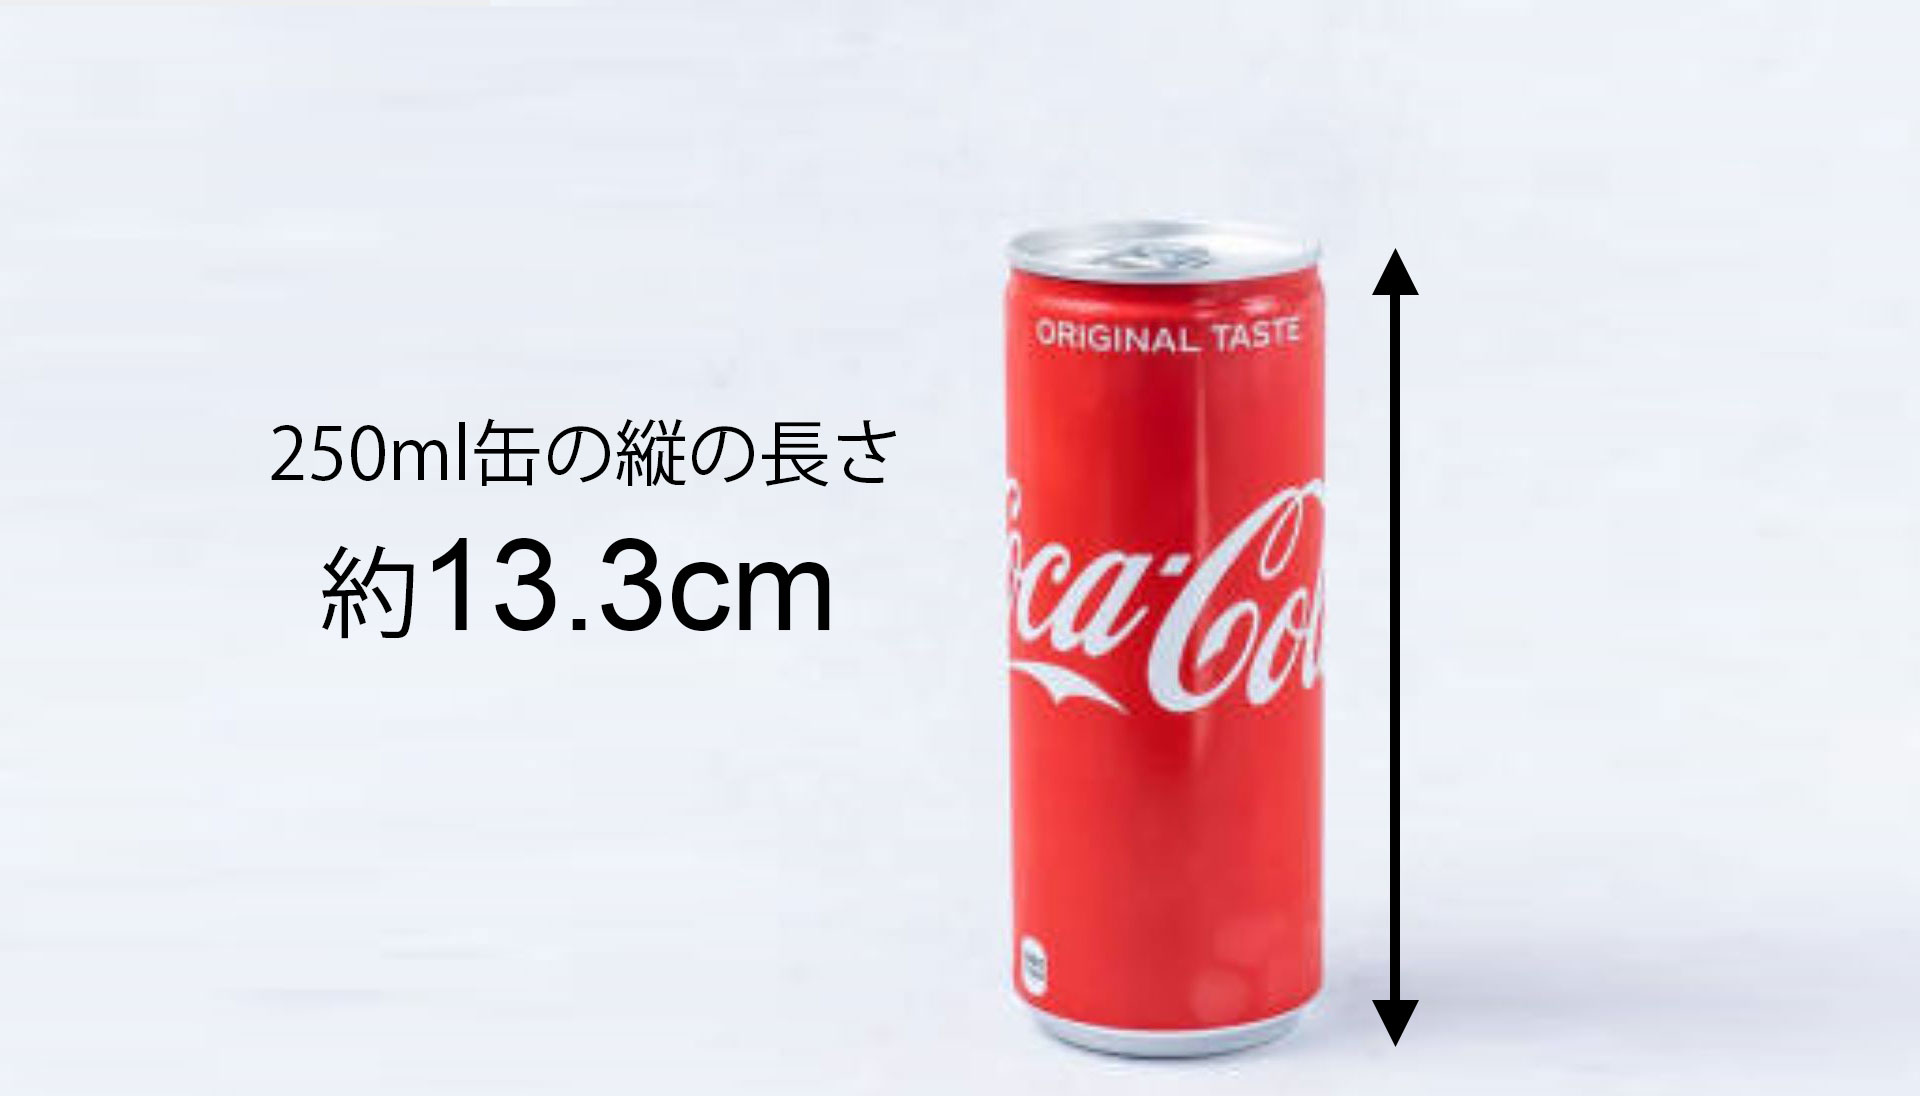 日本人のペニスの平均サイズは約13cm